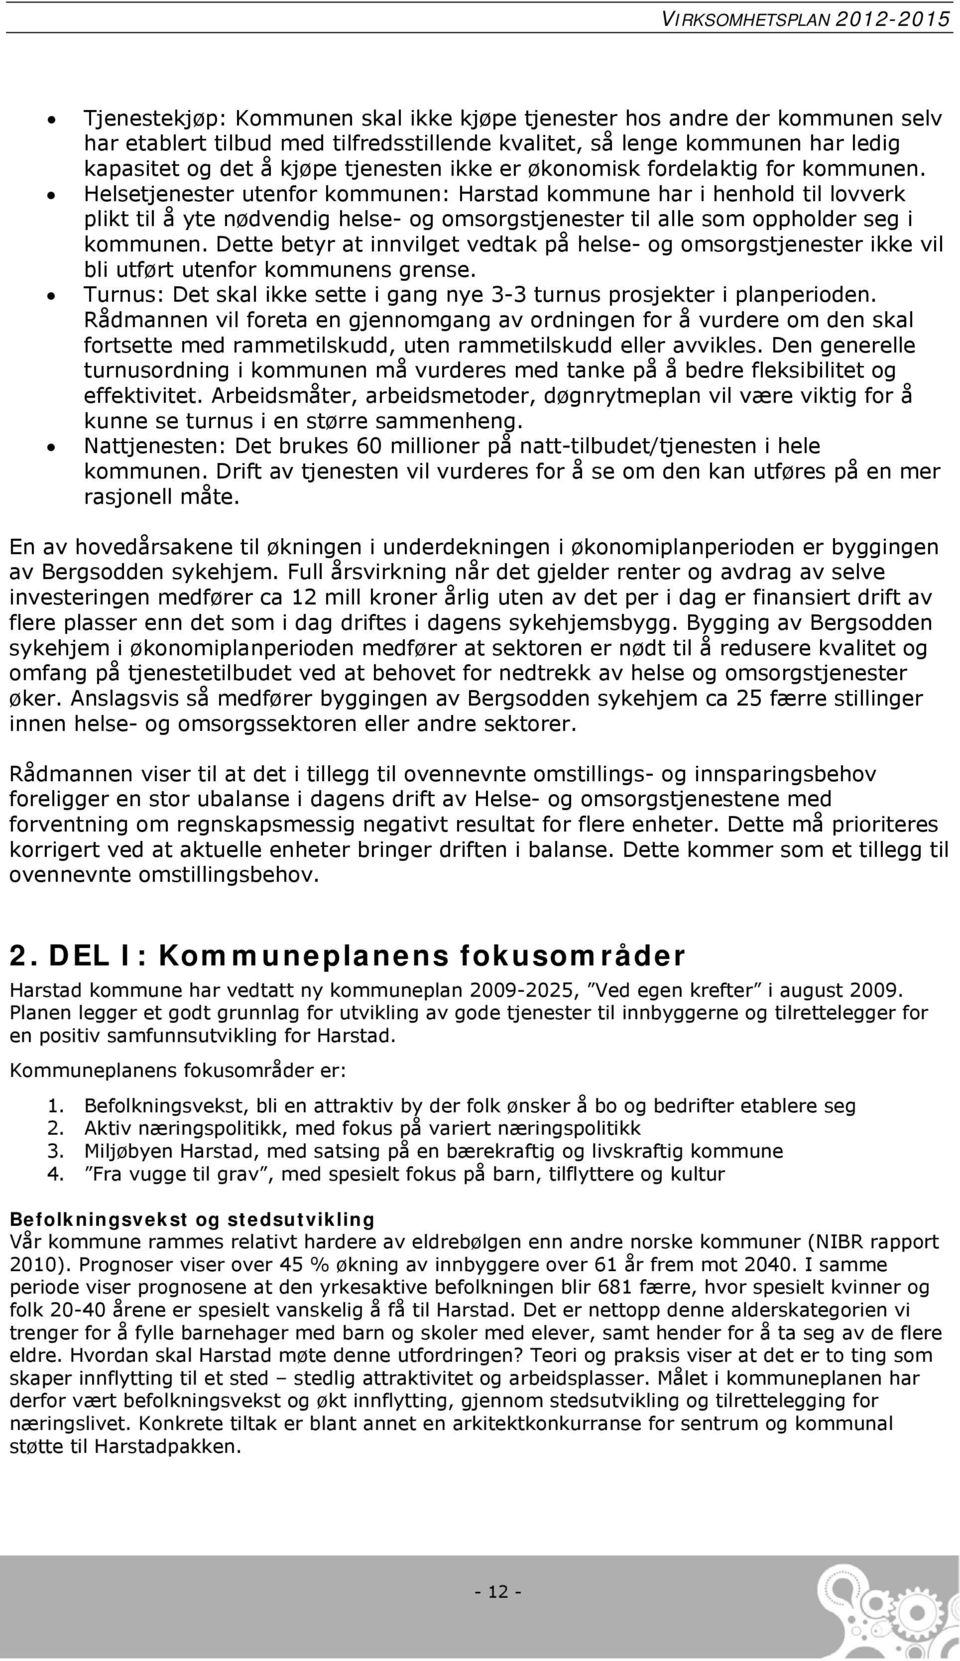 Helsetjenester utenfor kommunen: Harstad kommune har i henhold til lovverk plikt til å yte nødvendig helse- og omsorgstjenester til alle som oppholder seg i kommunen.